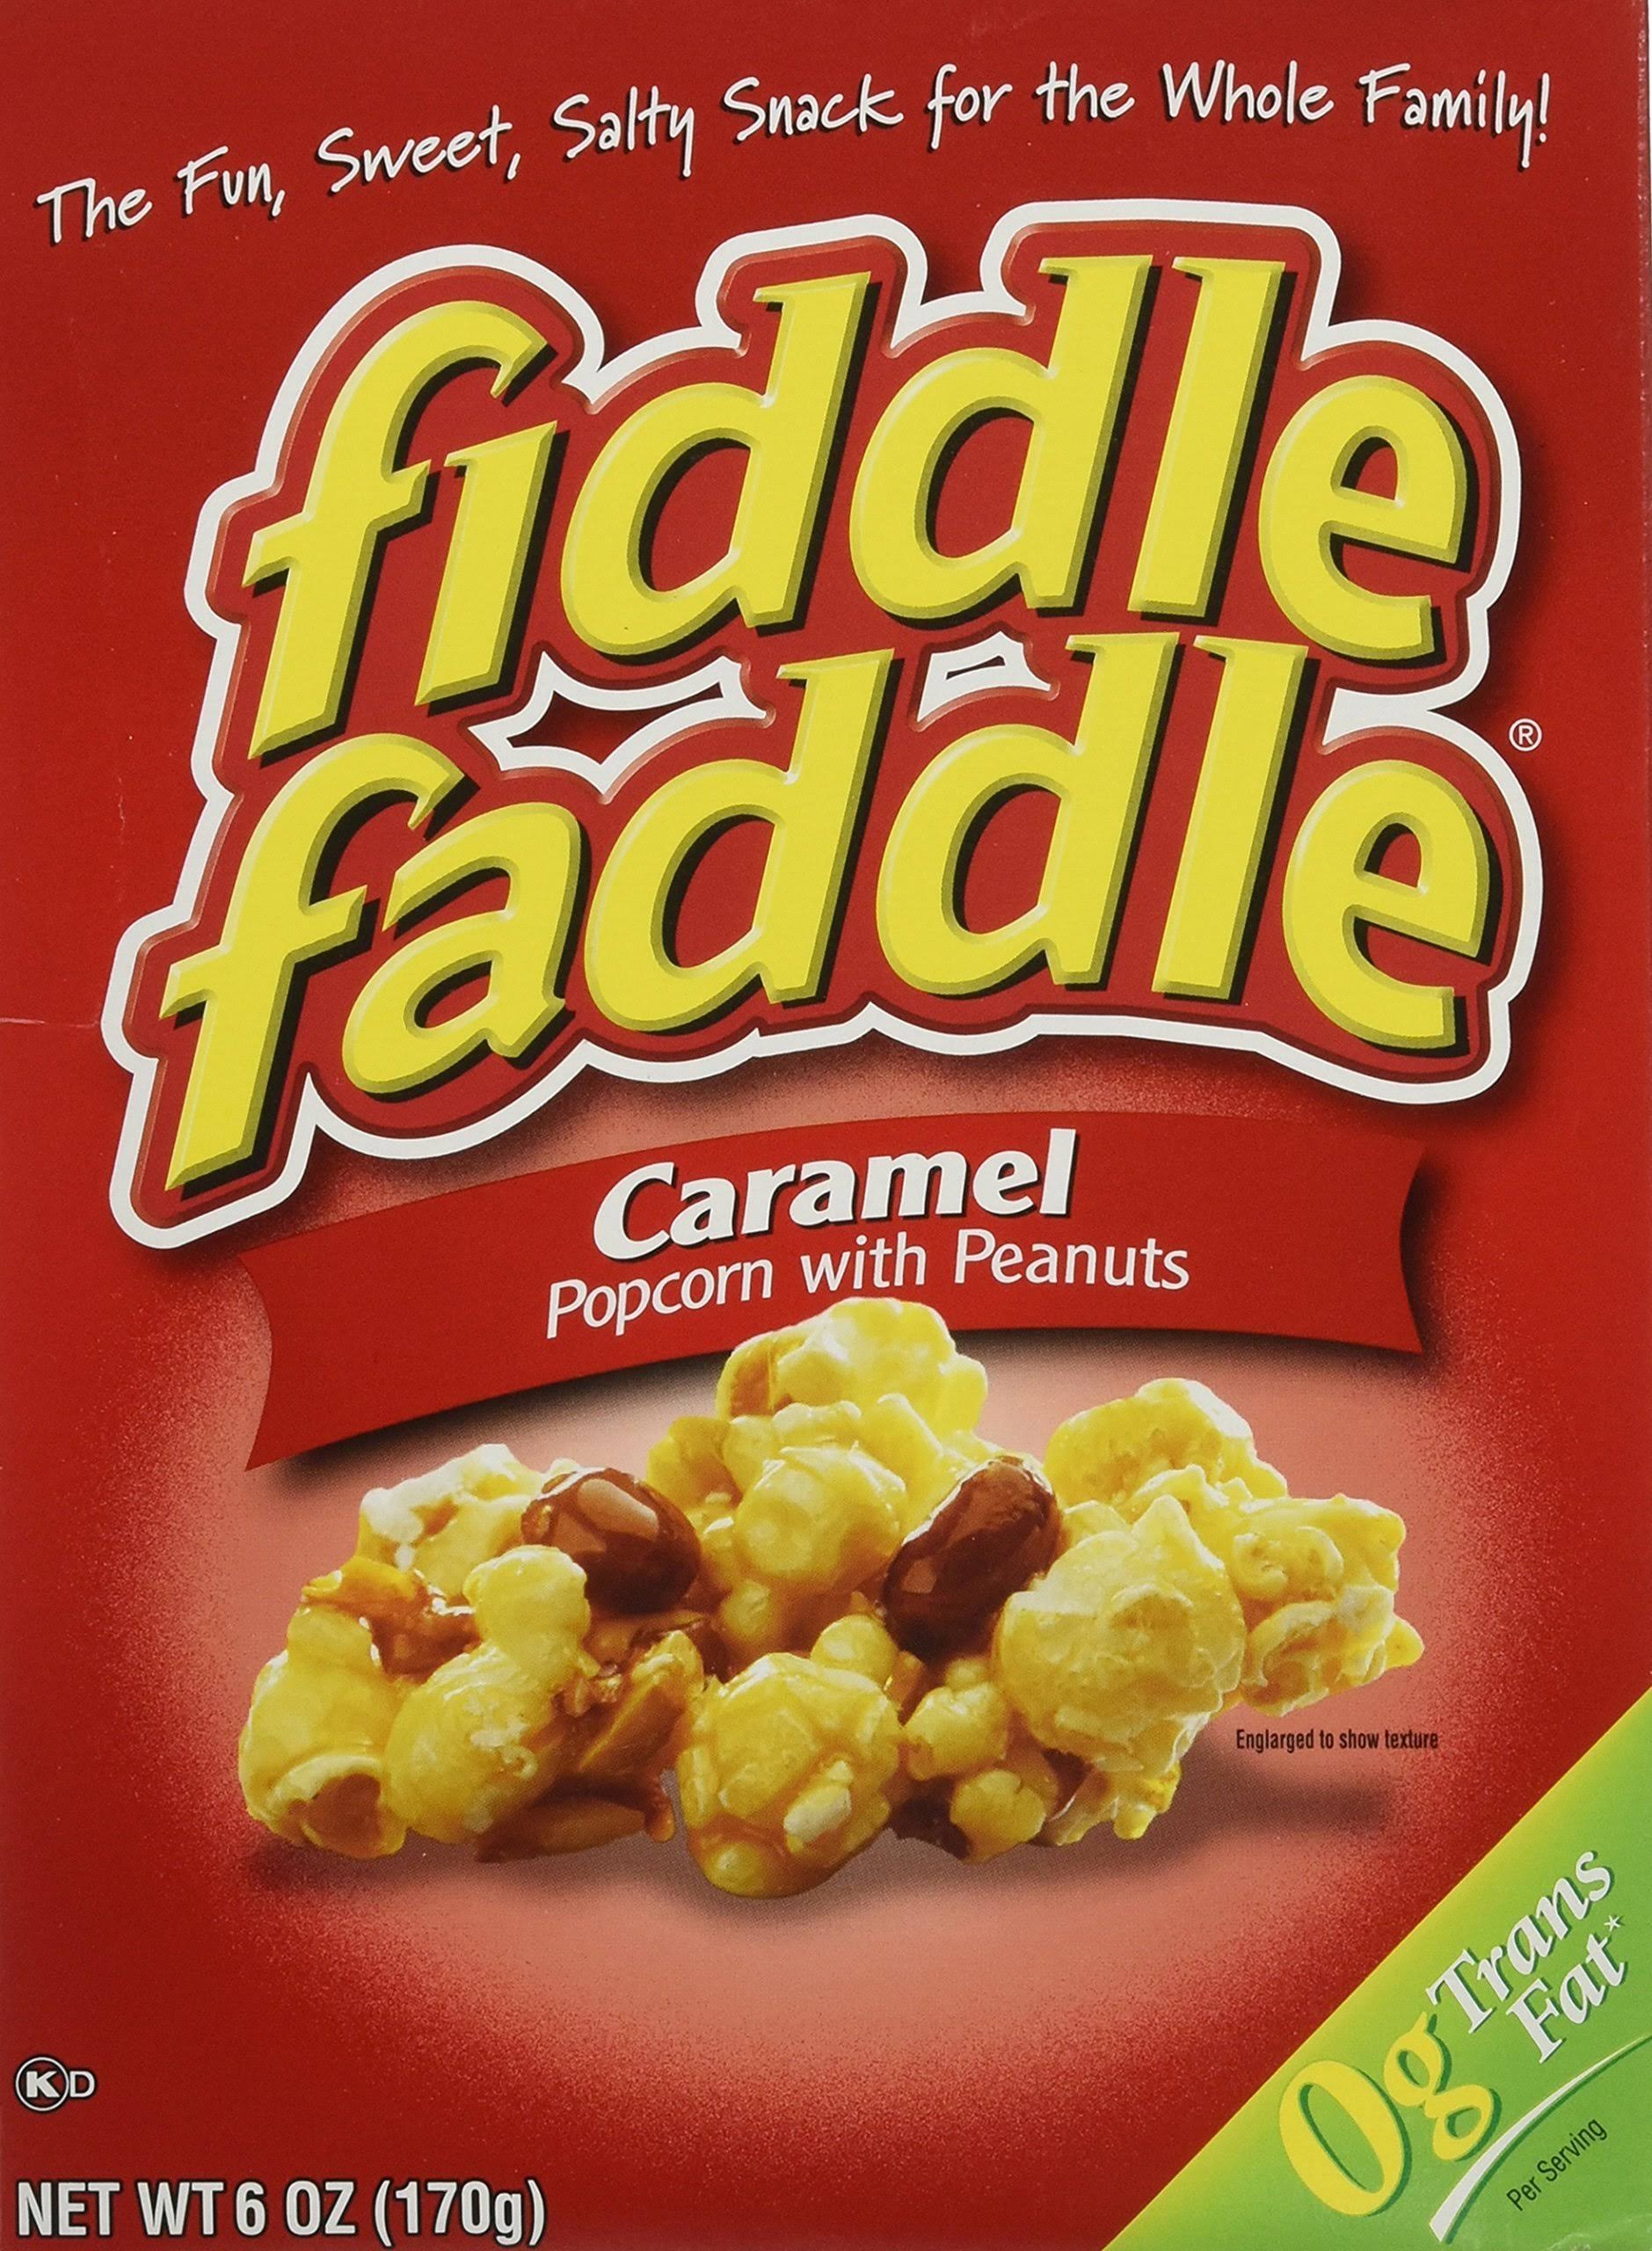 Fiddle Faddle Popcorn - With Peanuts, Caramel, 6oz